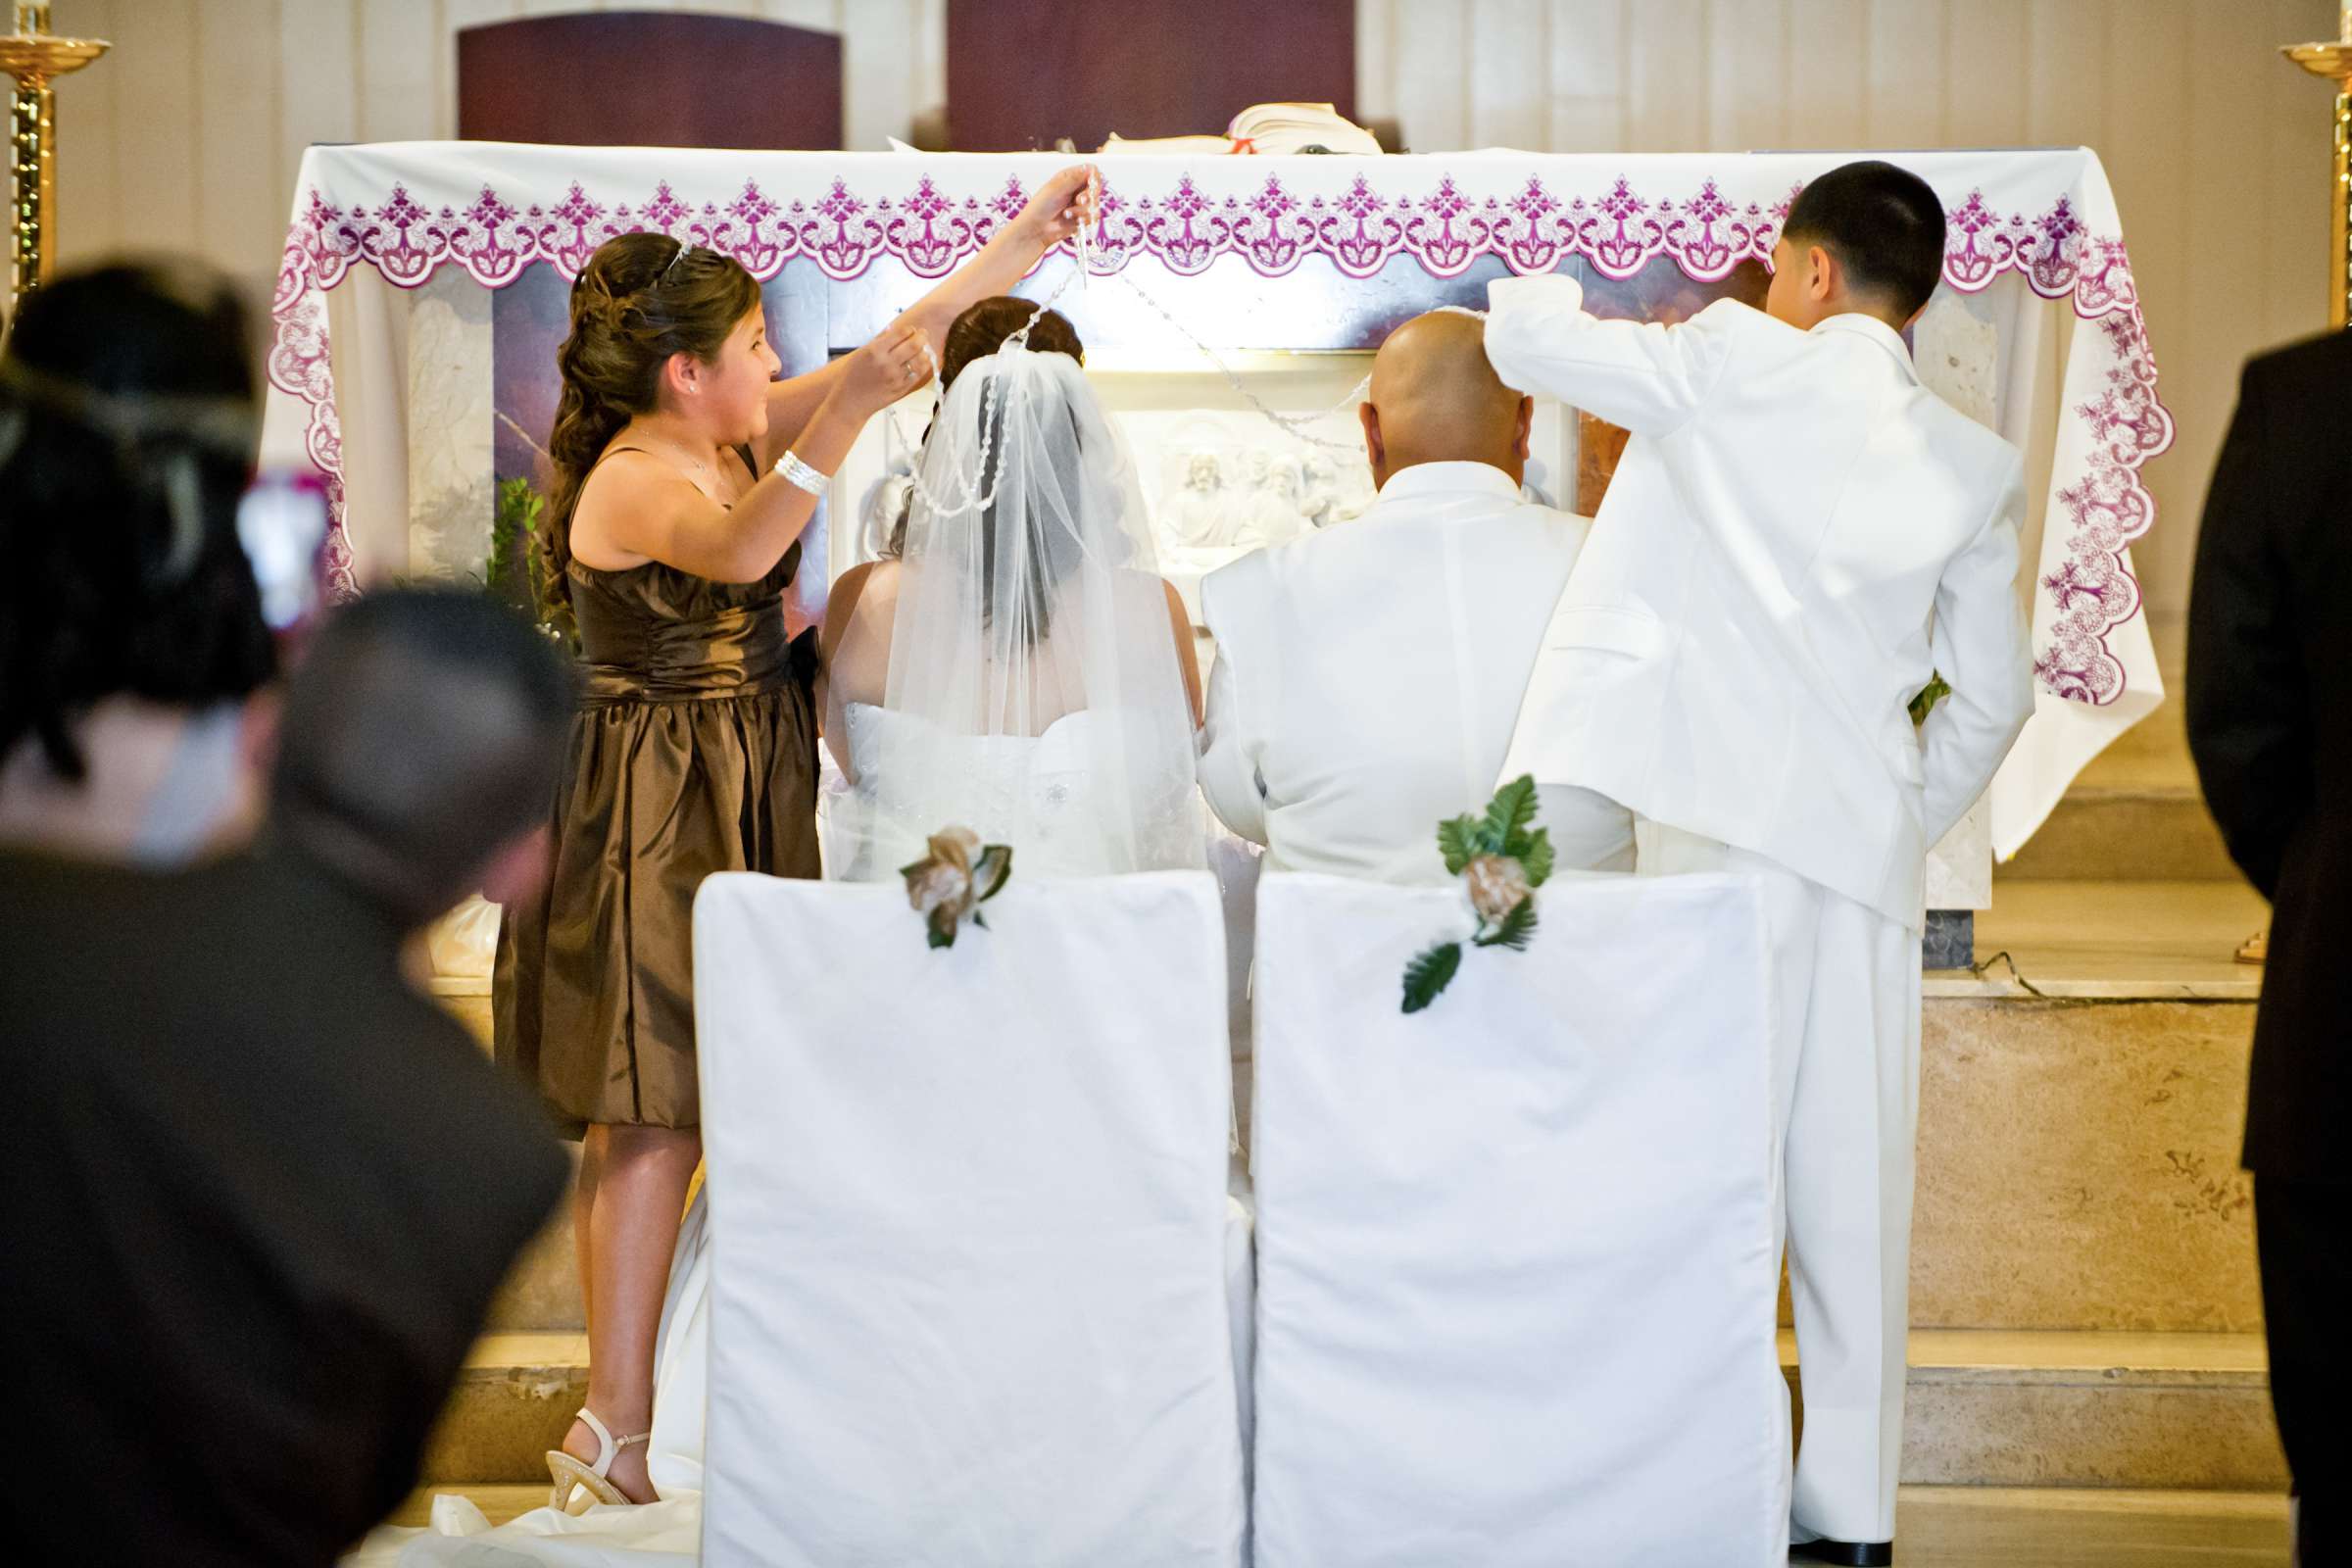 Holy Trinity Parish Hall Wedding, Elizabeth and Angel Wedding Photo #321868 by True Photography